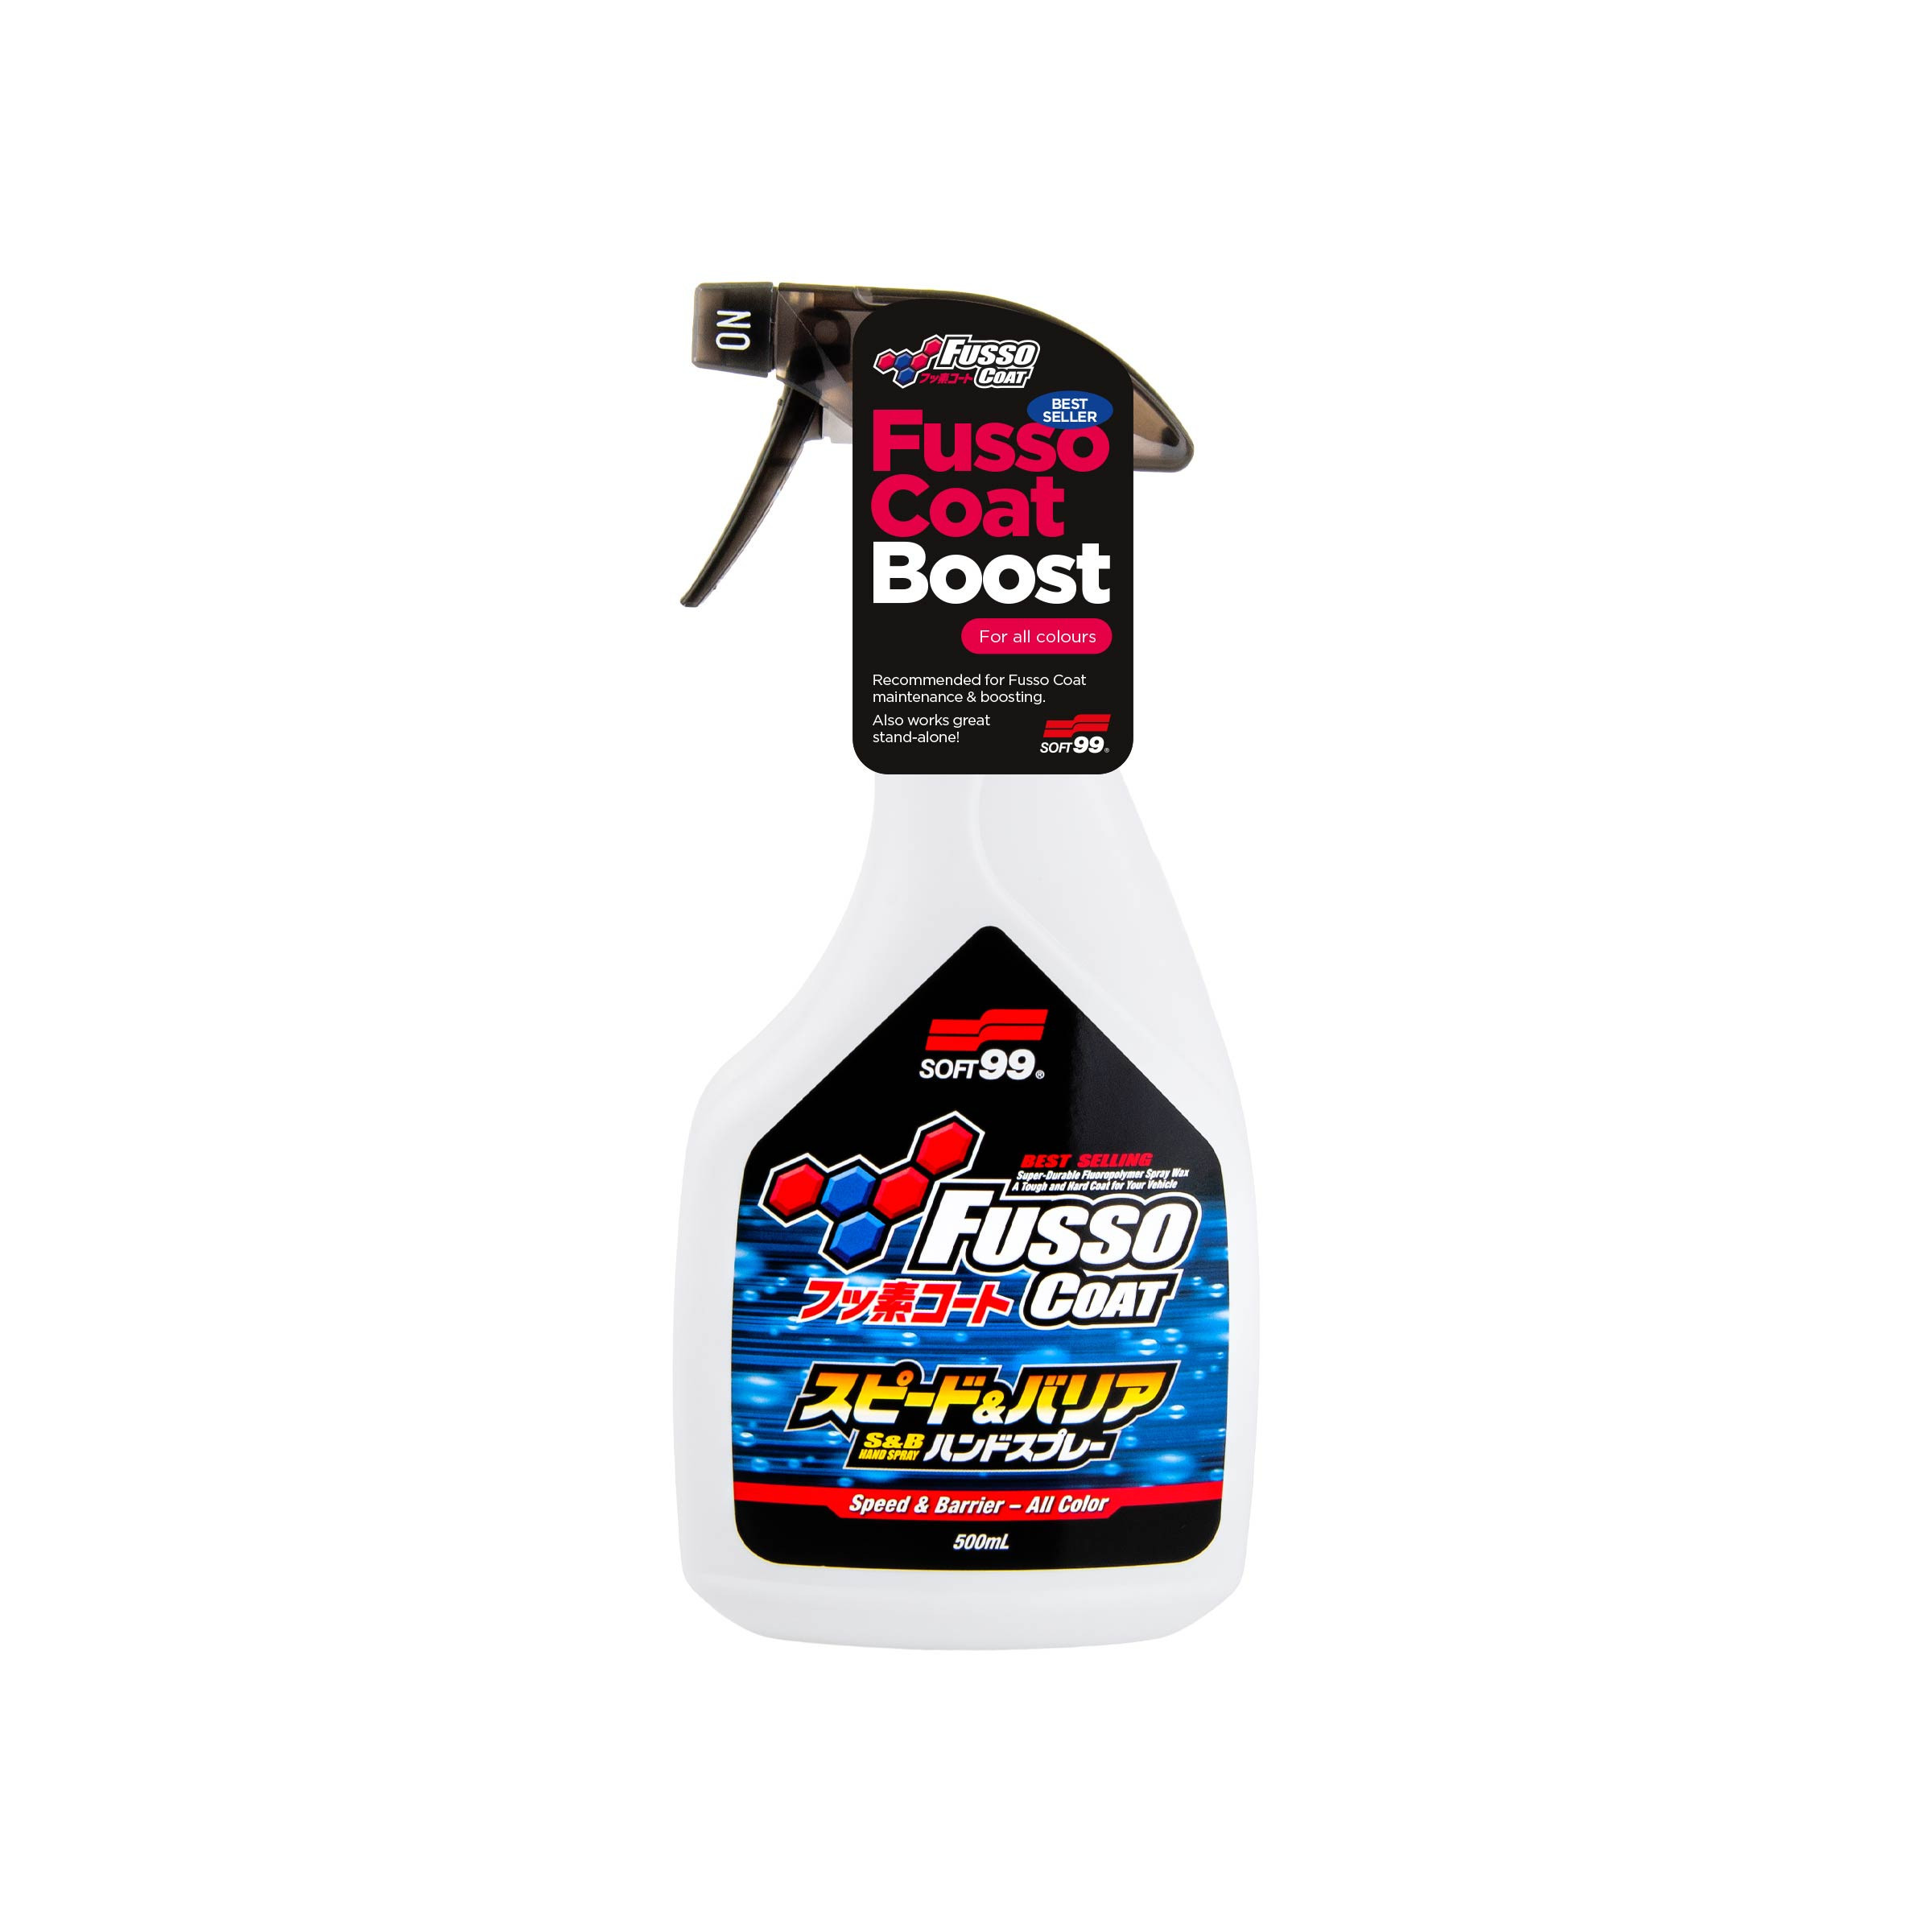 Fusso Coat Speed & Barrier, Quick Detailer, 500 ml